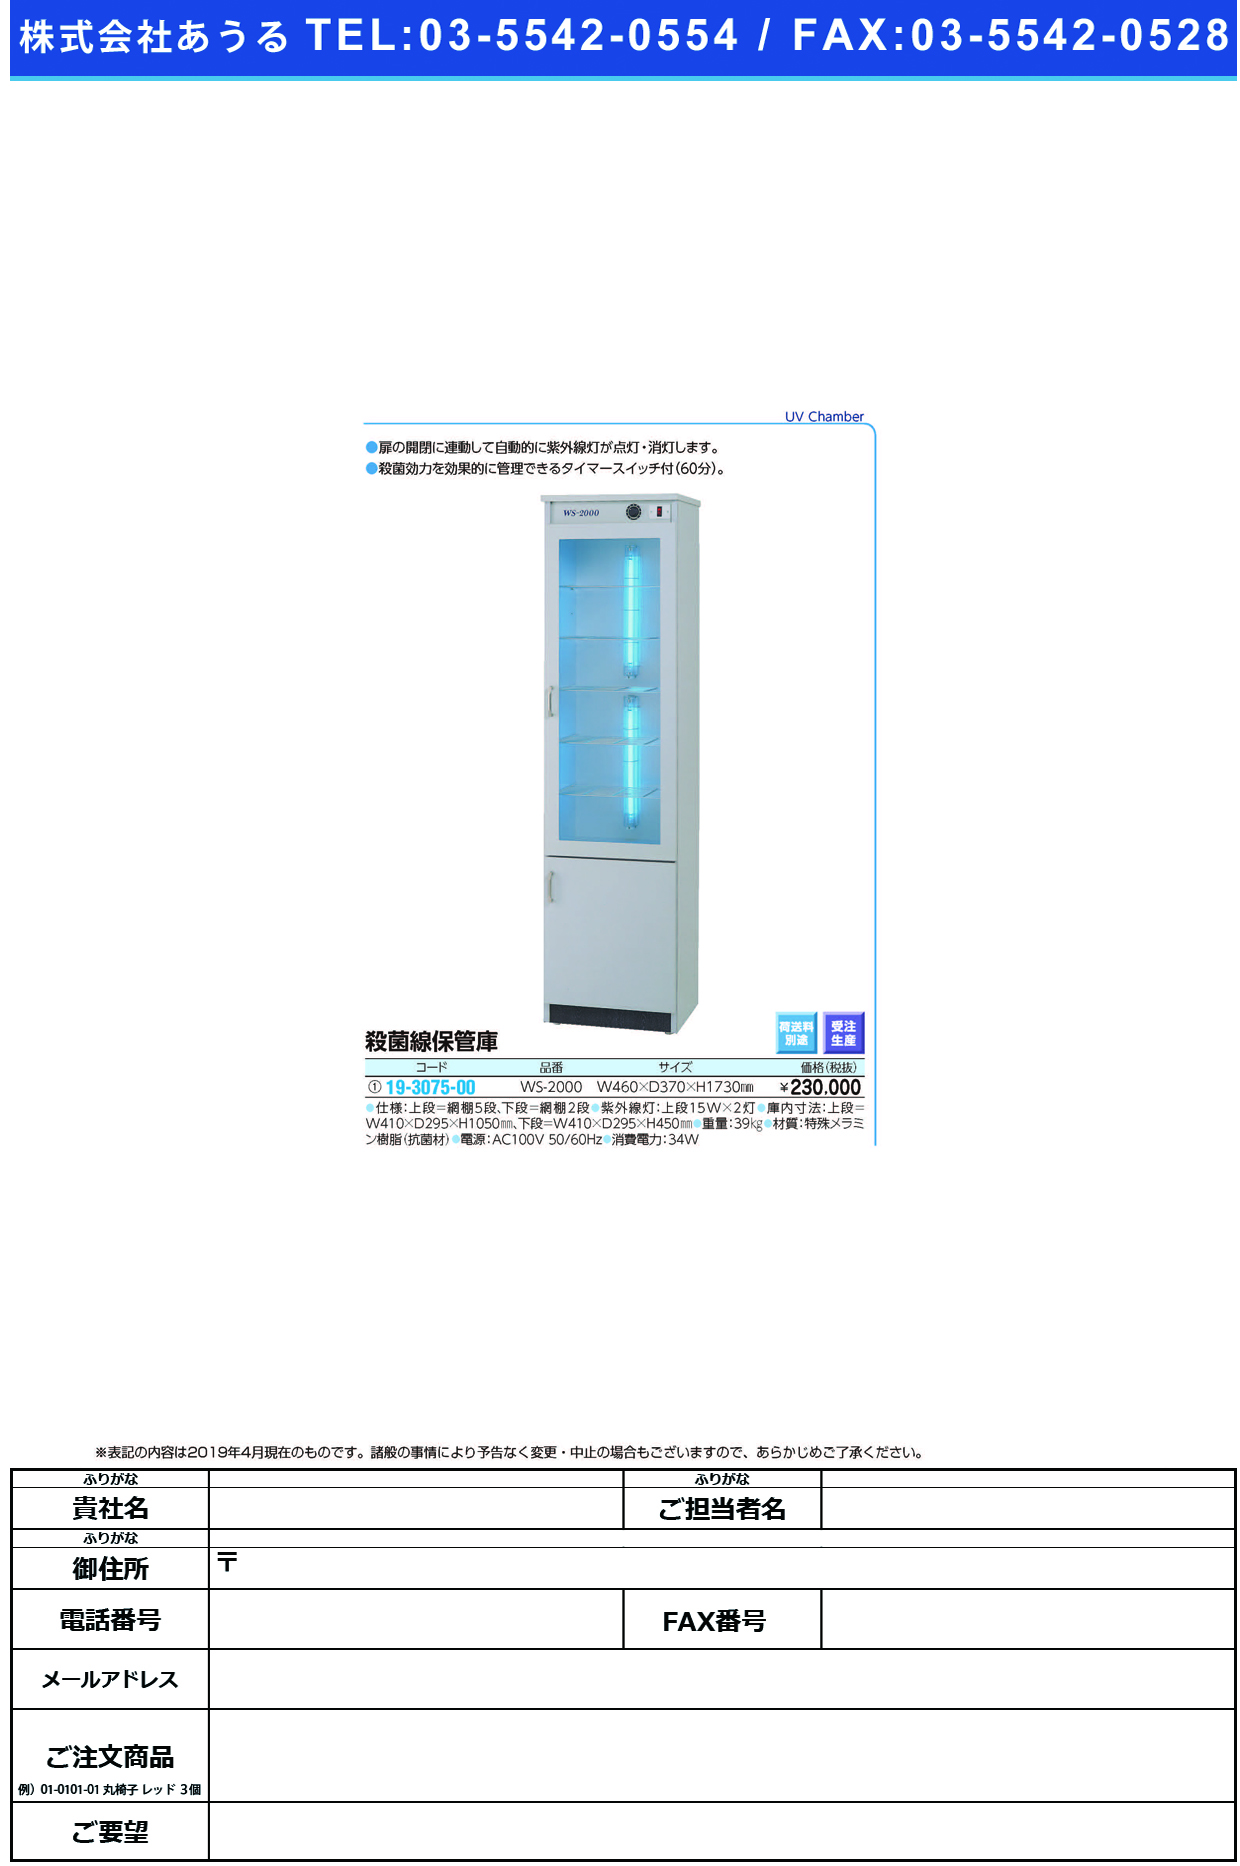 (19-3075-00)大型殺菌線保管庫 WS-2000 ｵｵｶﾞﾀｻｯｷﾝｾﾝﾎｶﾝｺ【1台単位】【2019年カタログ商品】